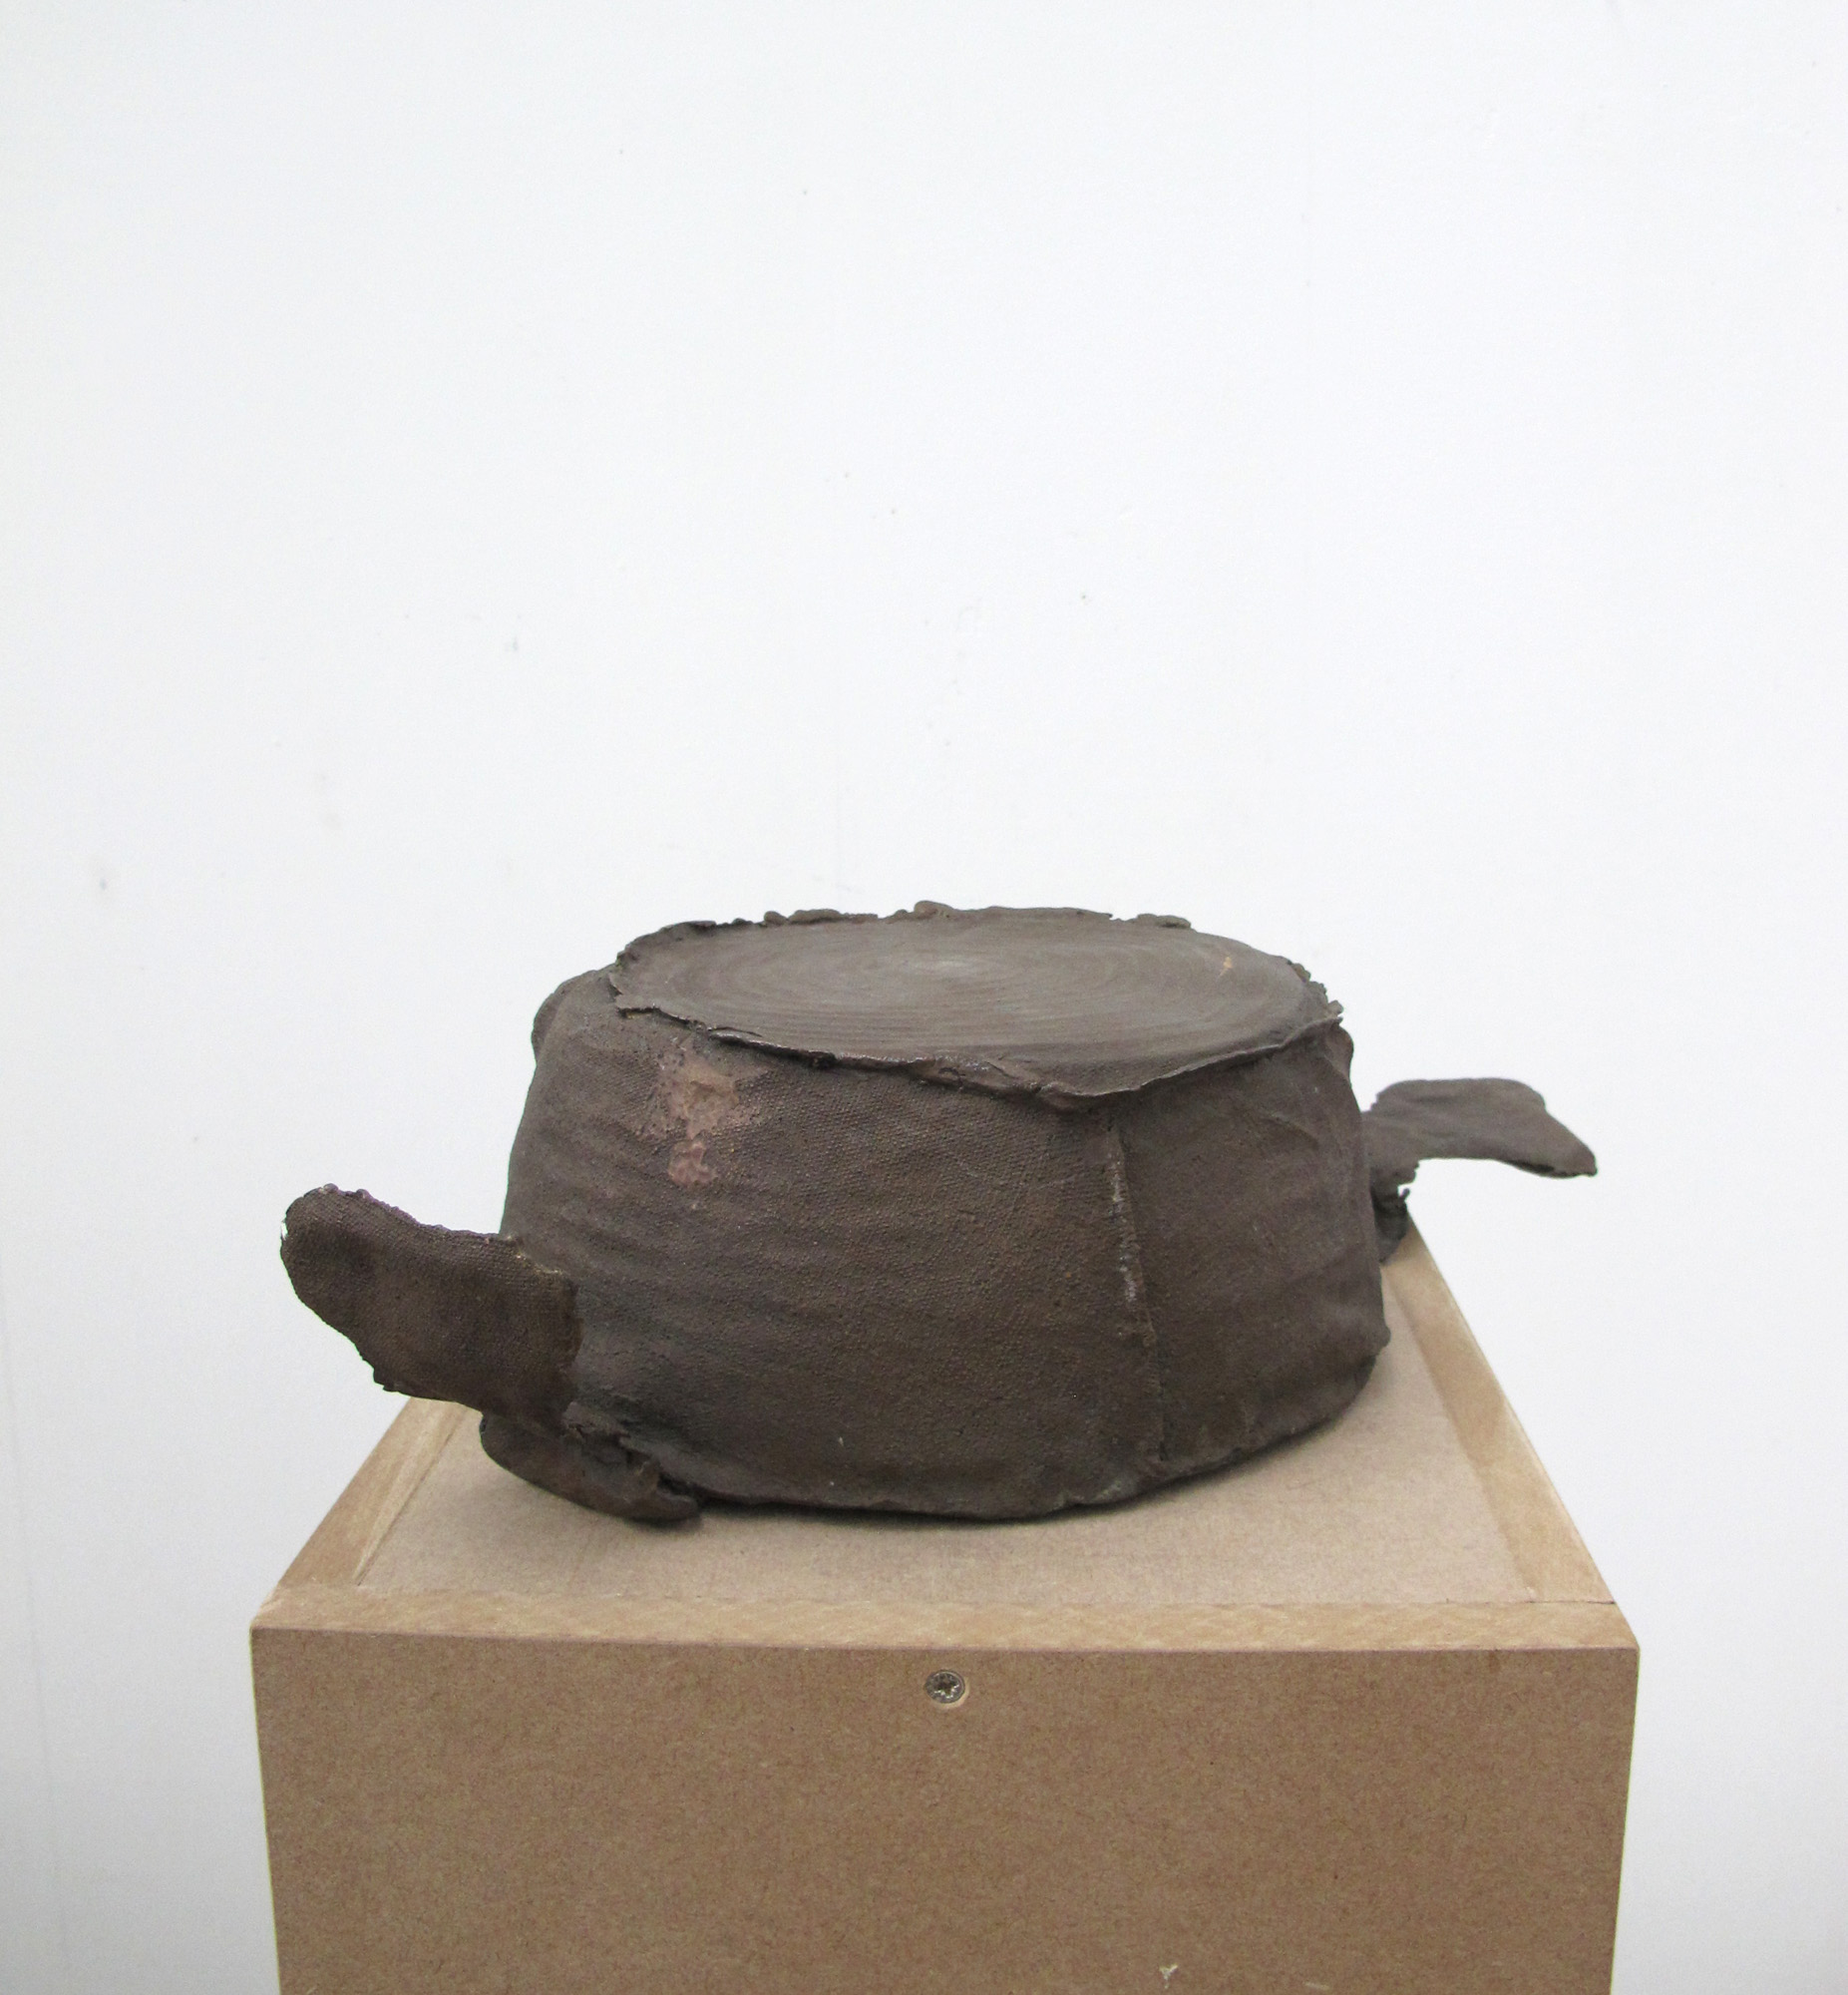 Sombrero-cazuela, 2012, bronze, 42 x 24 x 10 cm.